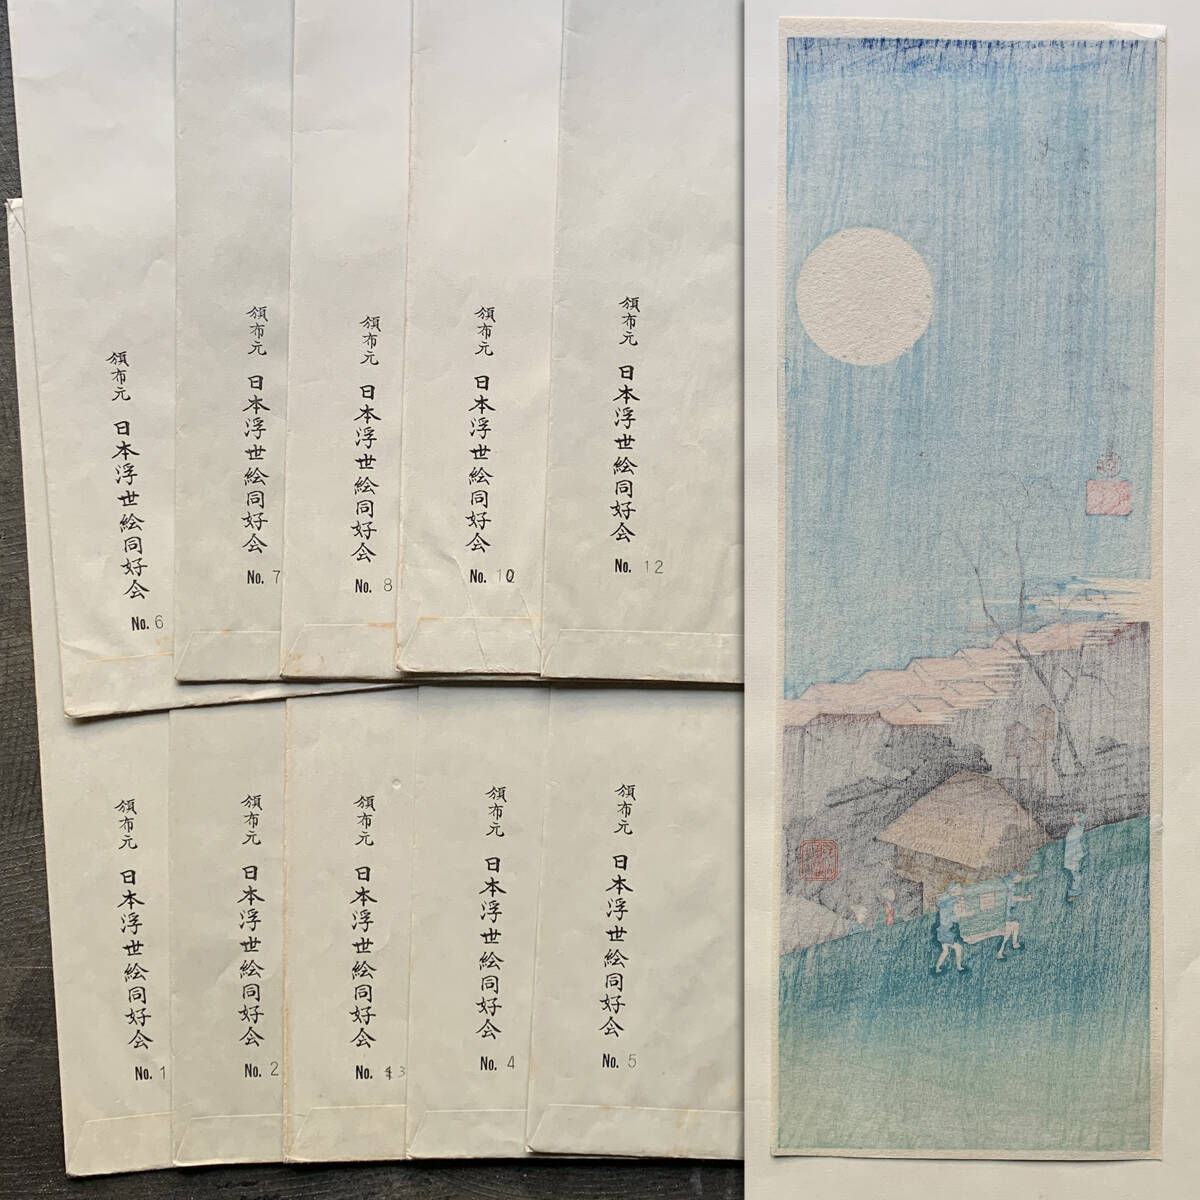 [ картина в жанре укиё ][. река широкий -слойный ] рука . гравюра на дереве [ широкий -слойный tanzaku сборник ]10 map Япония картина в жанре укиё такой же .. переиздание . цветы и птицы . пейзажи известных мест первый ..ukiyoe hiroshige 20